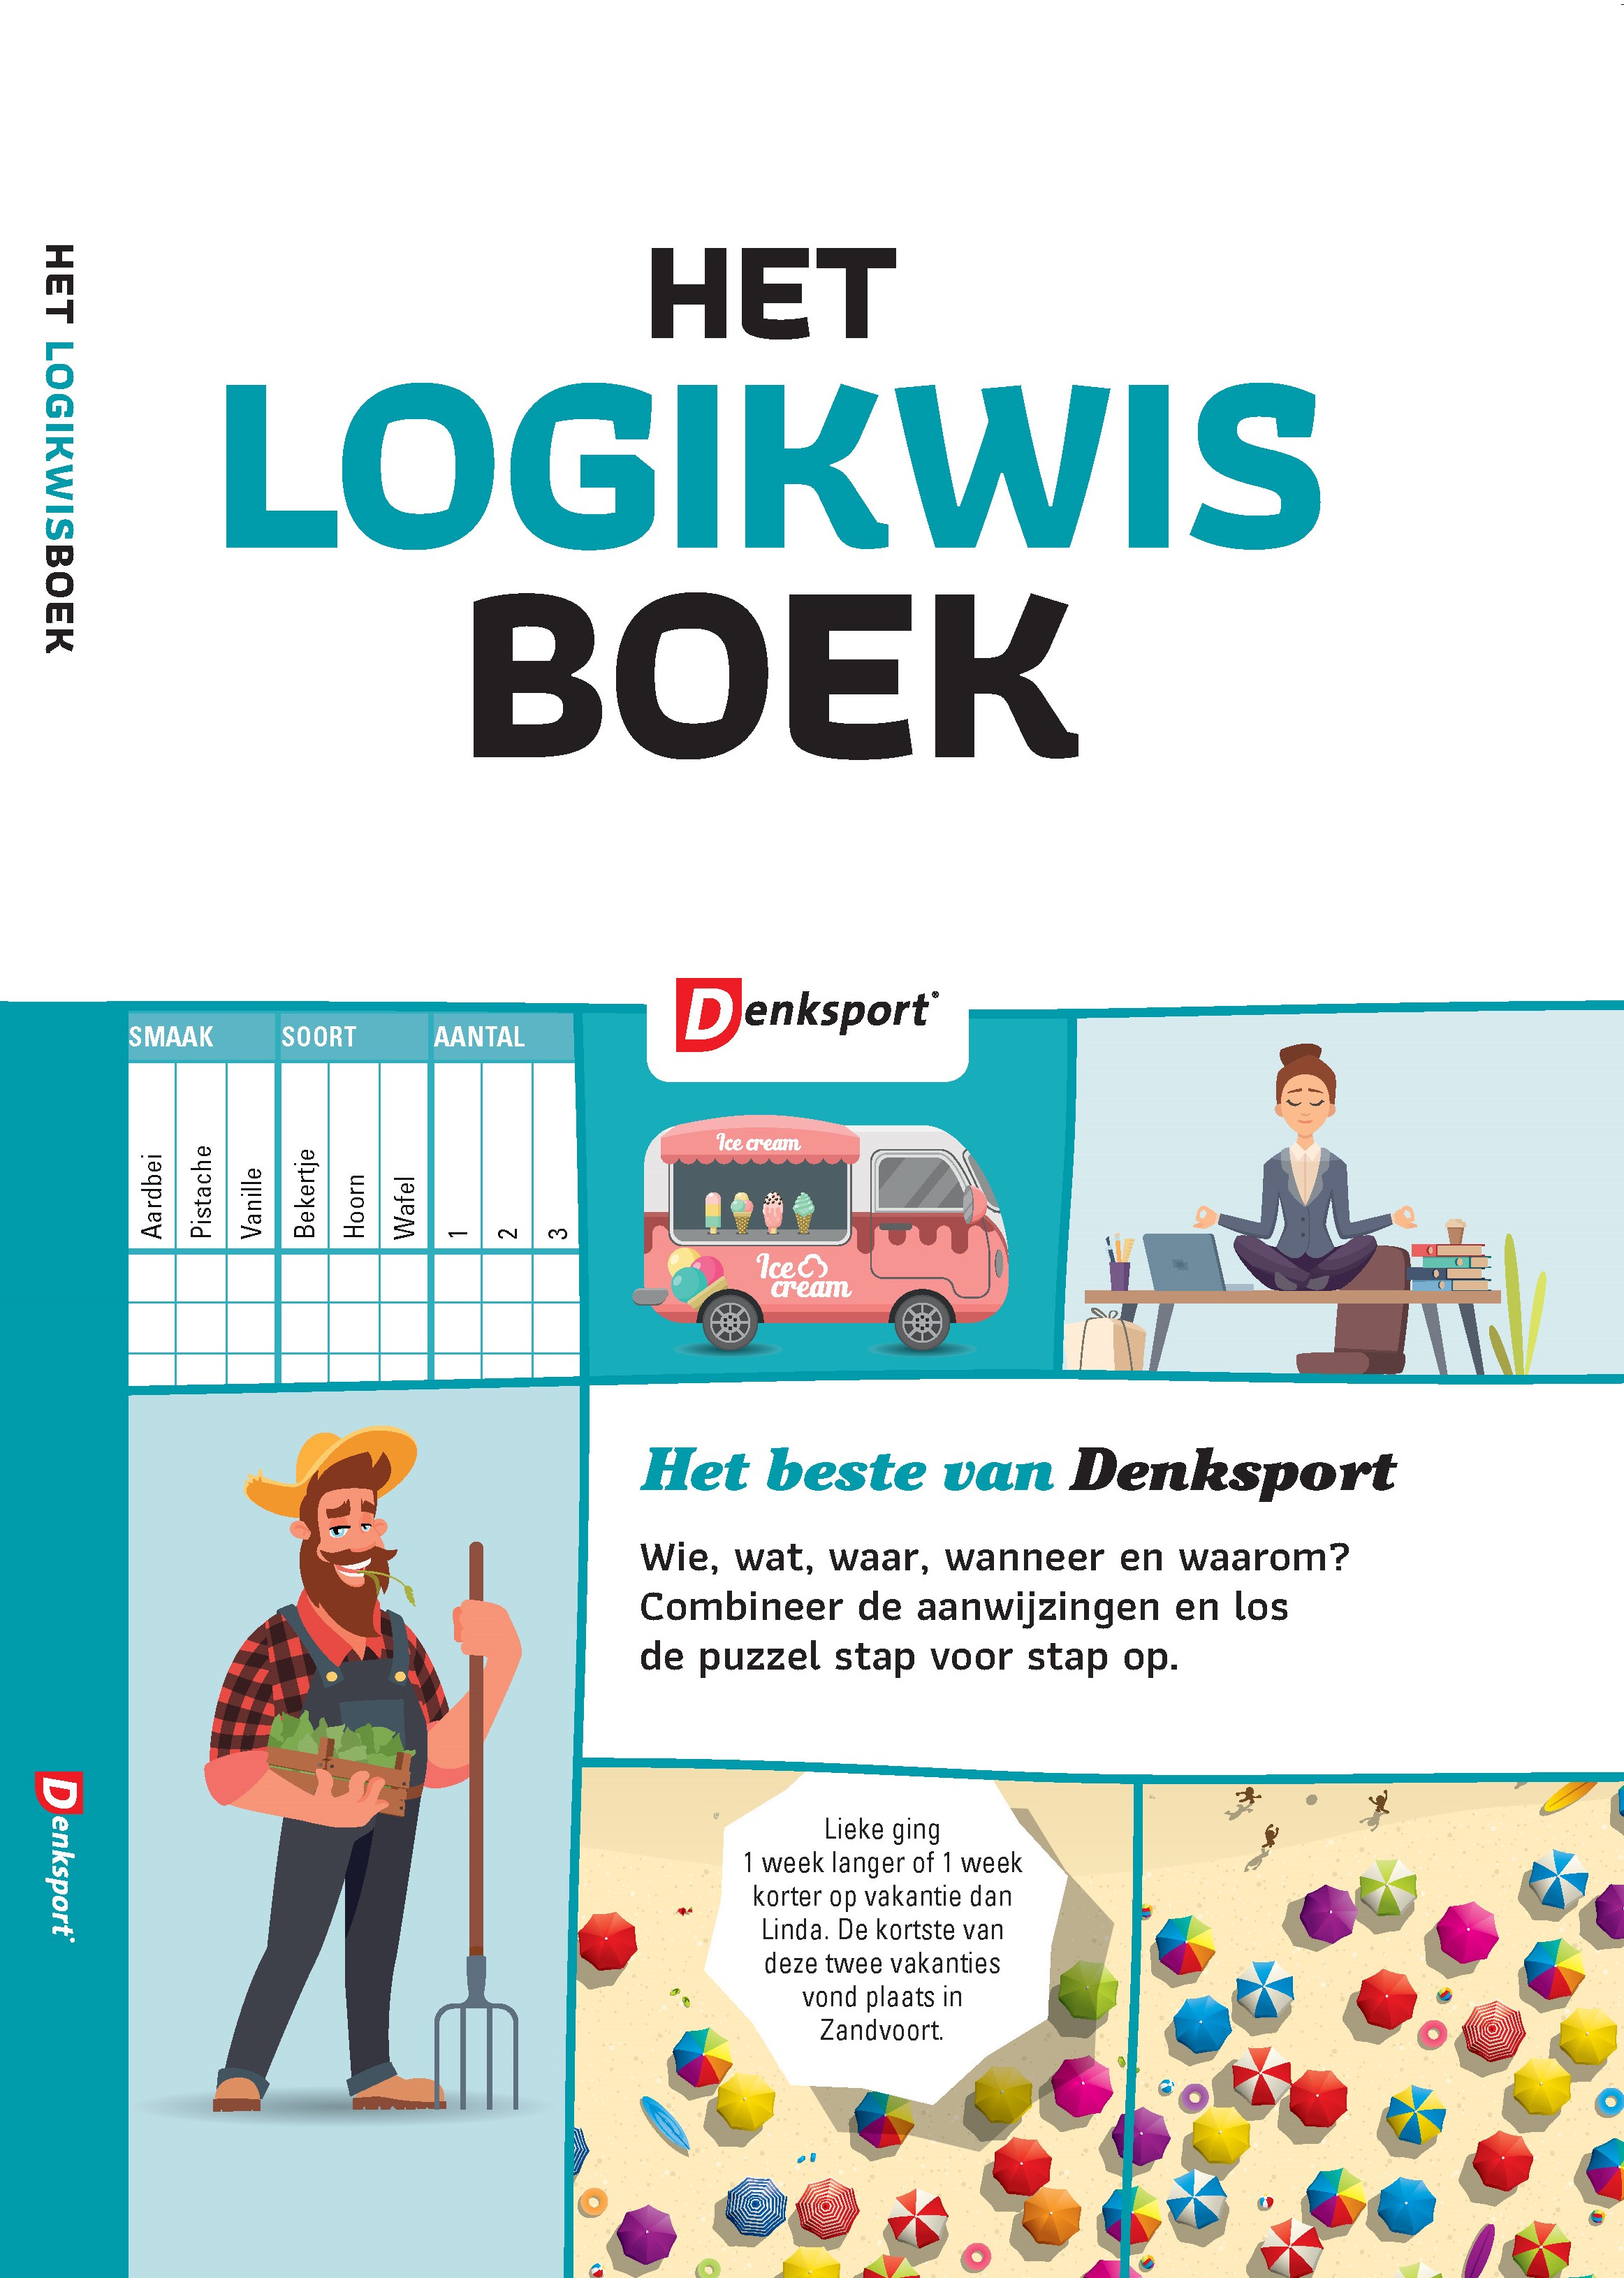 Het Logikwis boek